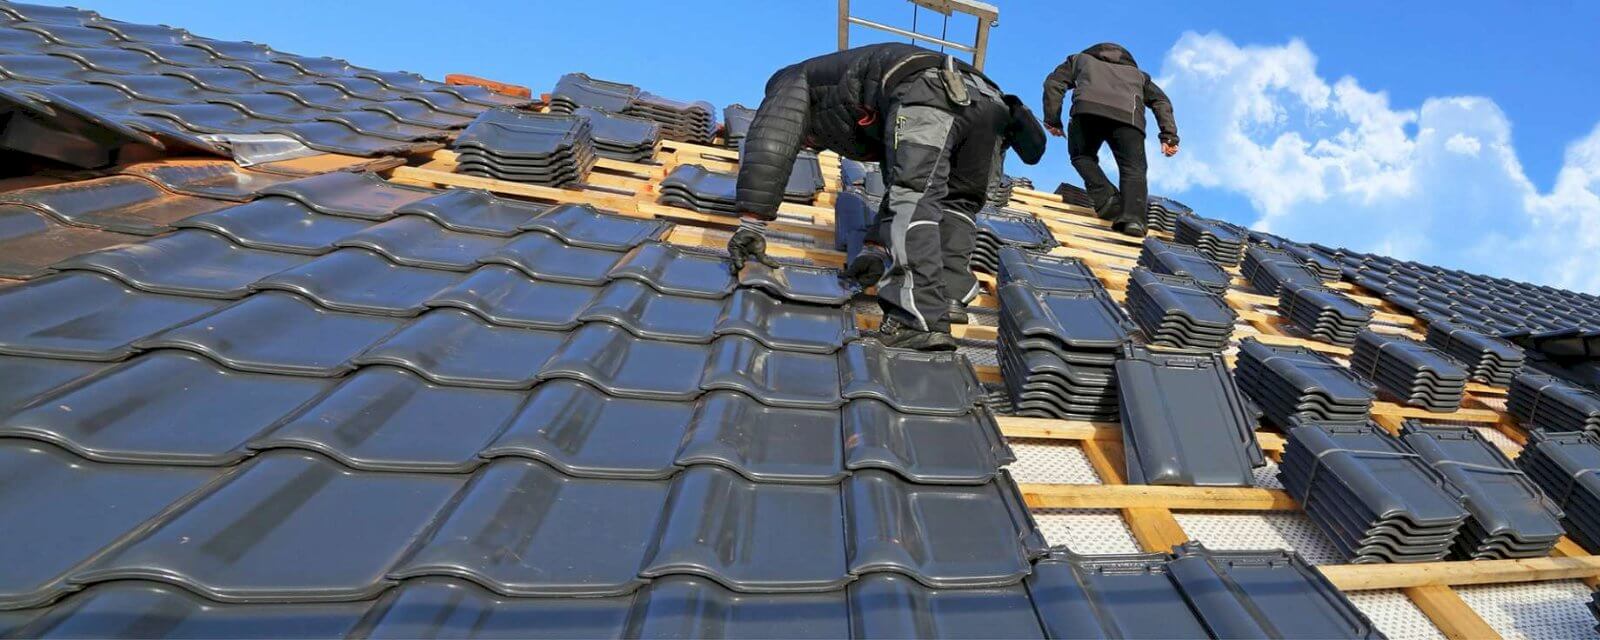 Réfection de toiture : les différents travaux